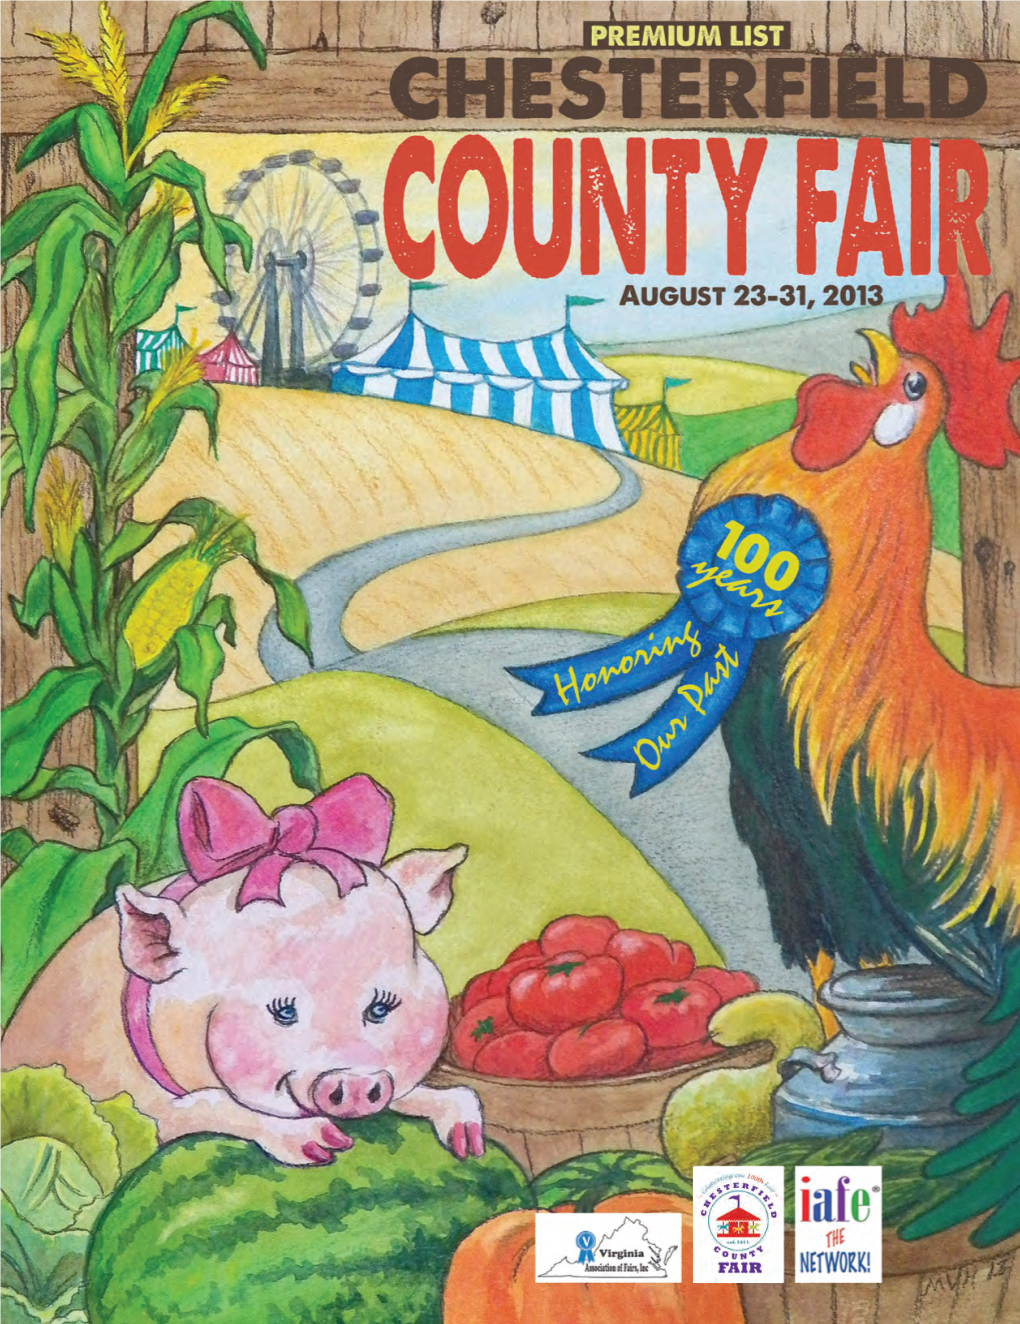 Miss Chesterfield County Fair SAVANNAH LANE